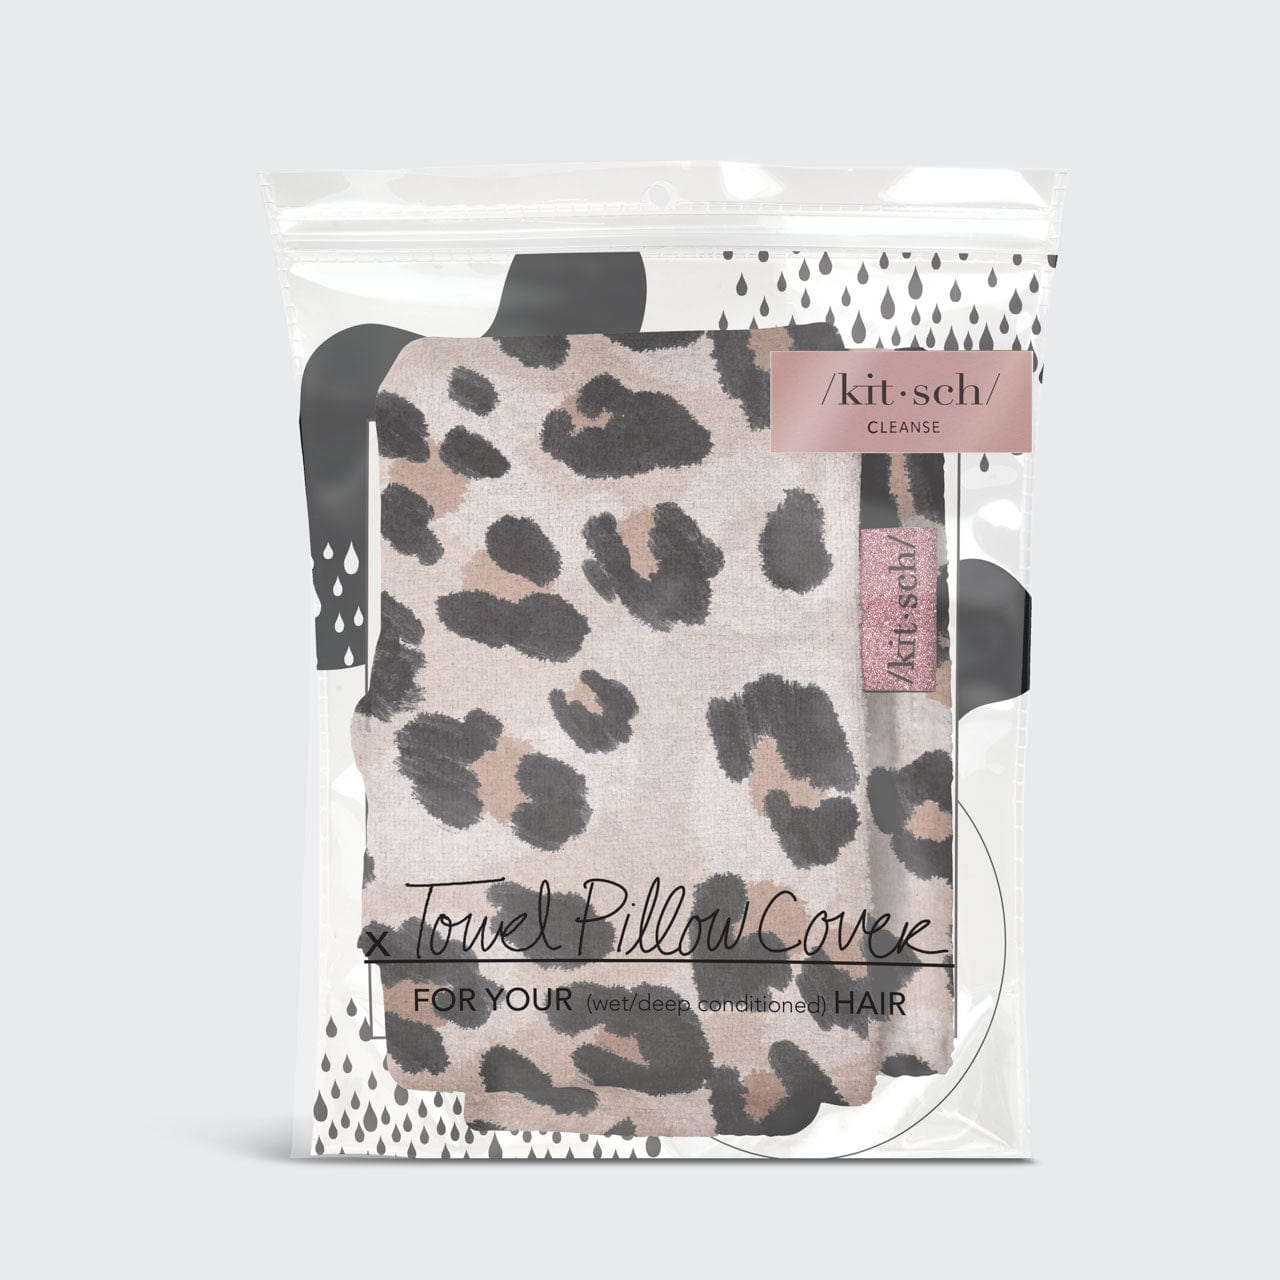 Handtuch Kissenbezug - Leopard